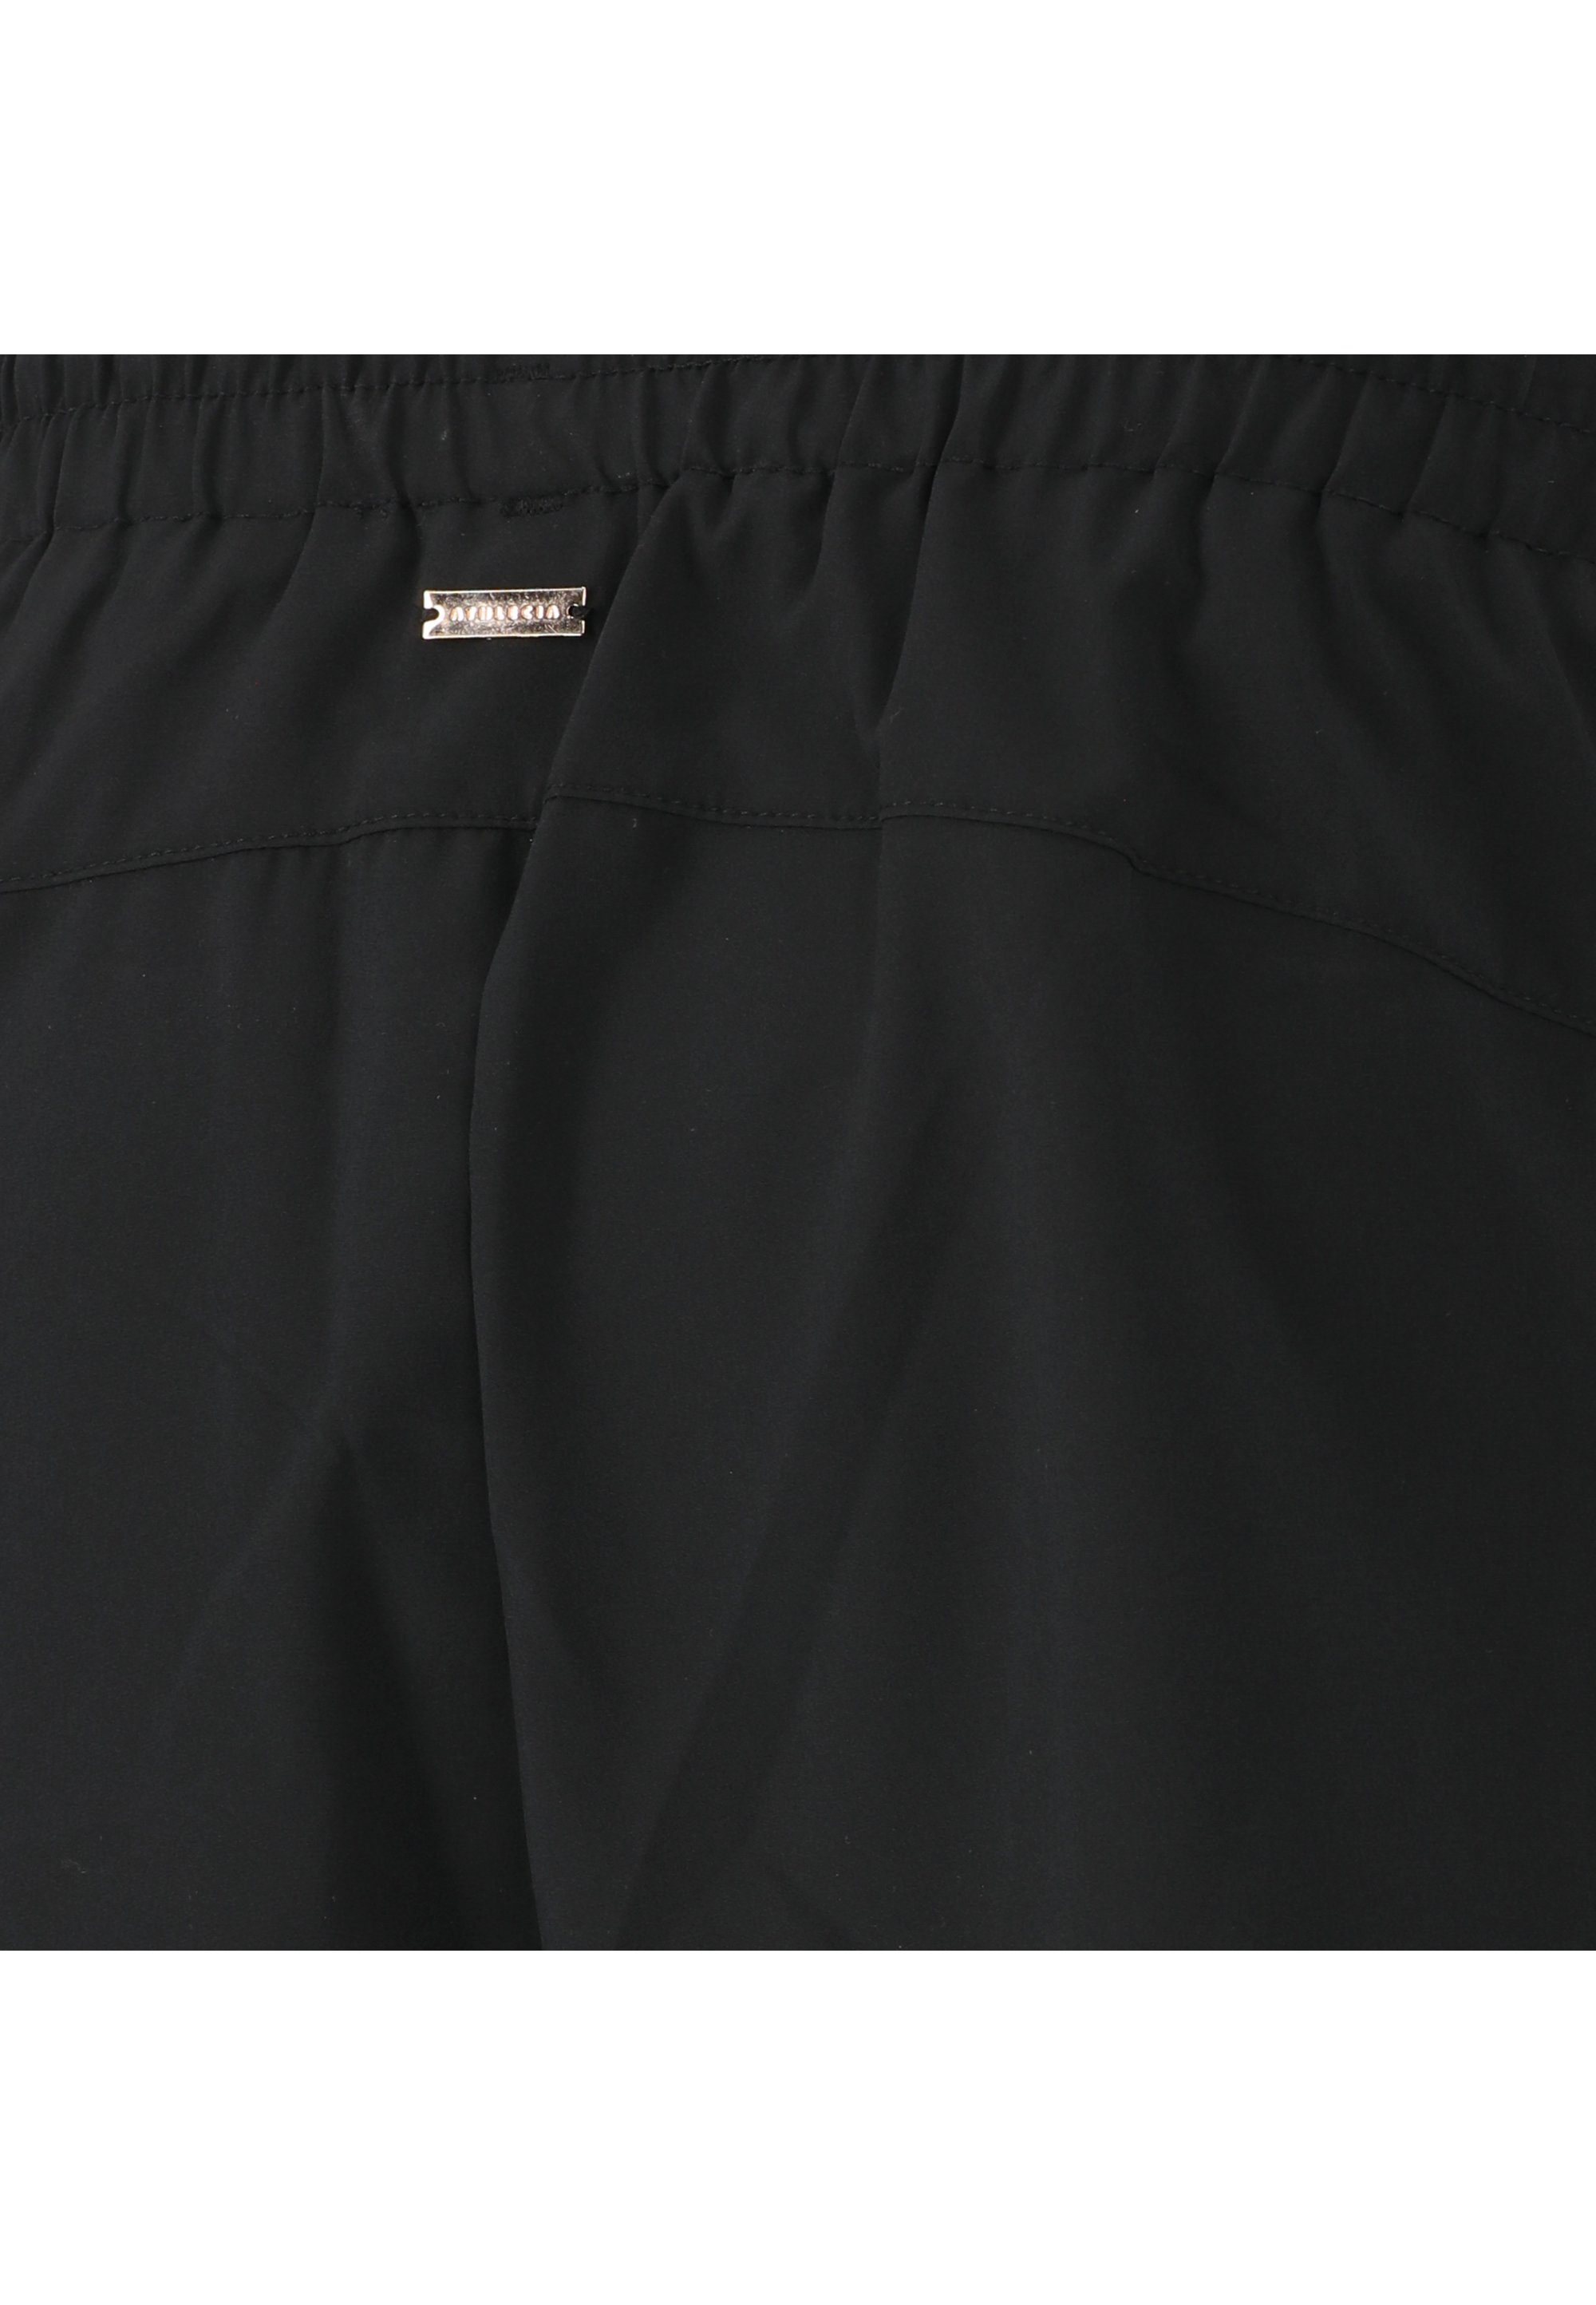 Timmie mit Seitentaschen schwarz praktischen ATHLECIA Shorts